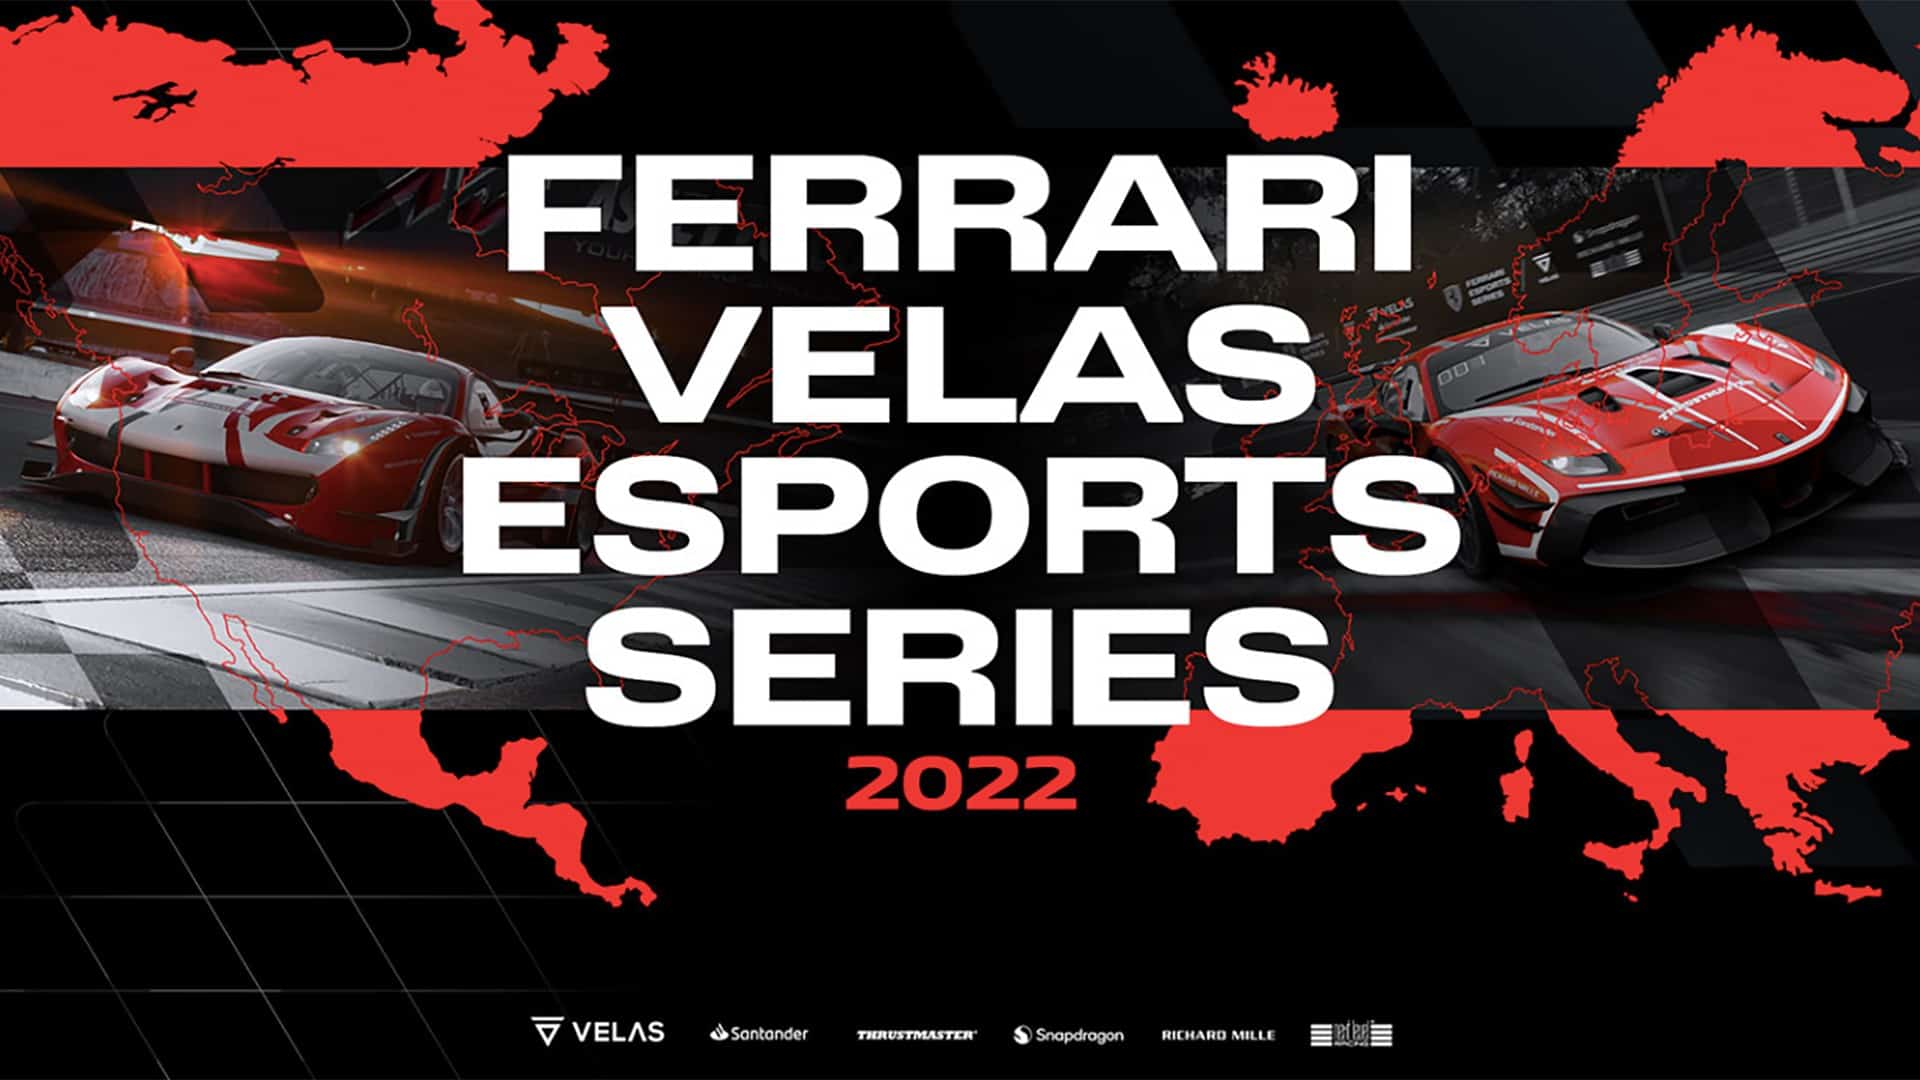 Ferrari Velas Esports Series announced, includes Europe and North America regionals